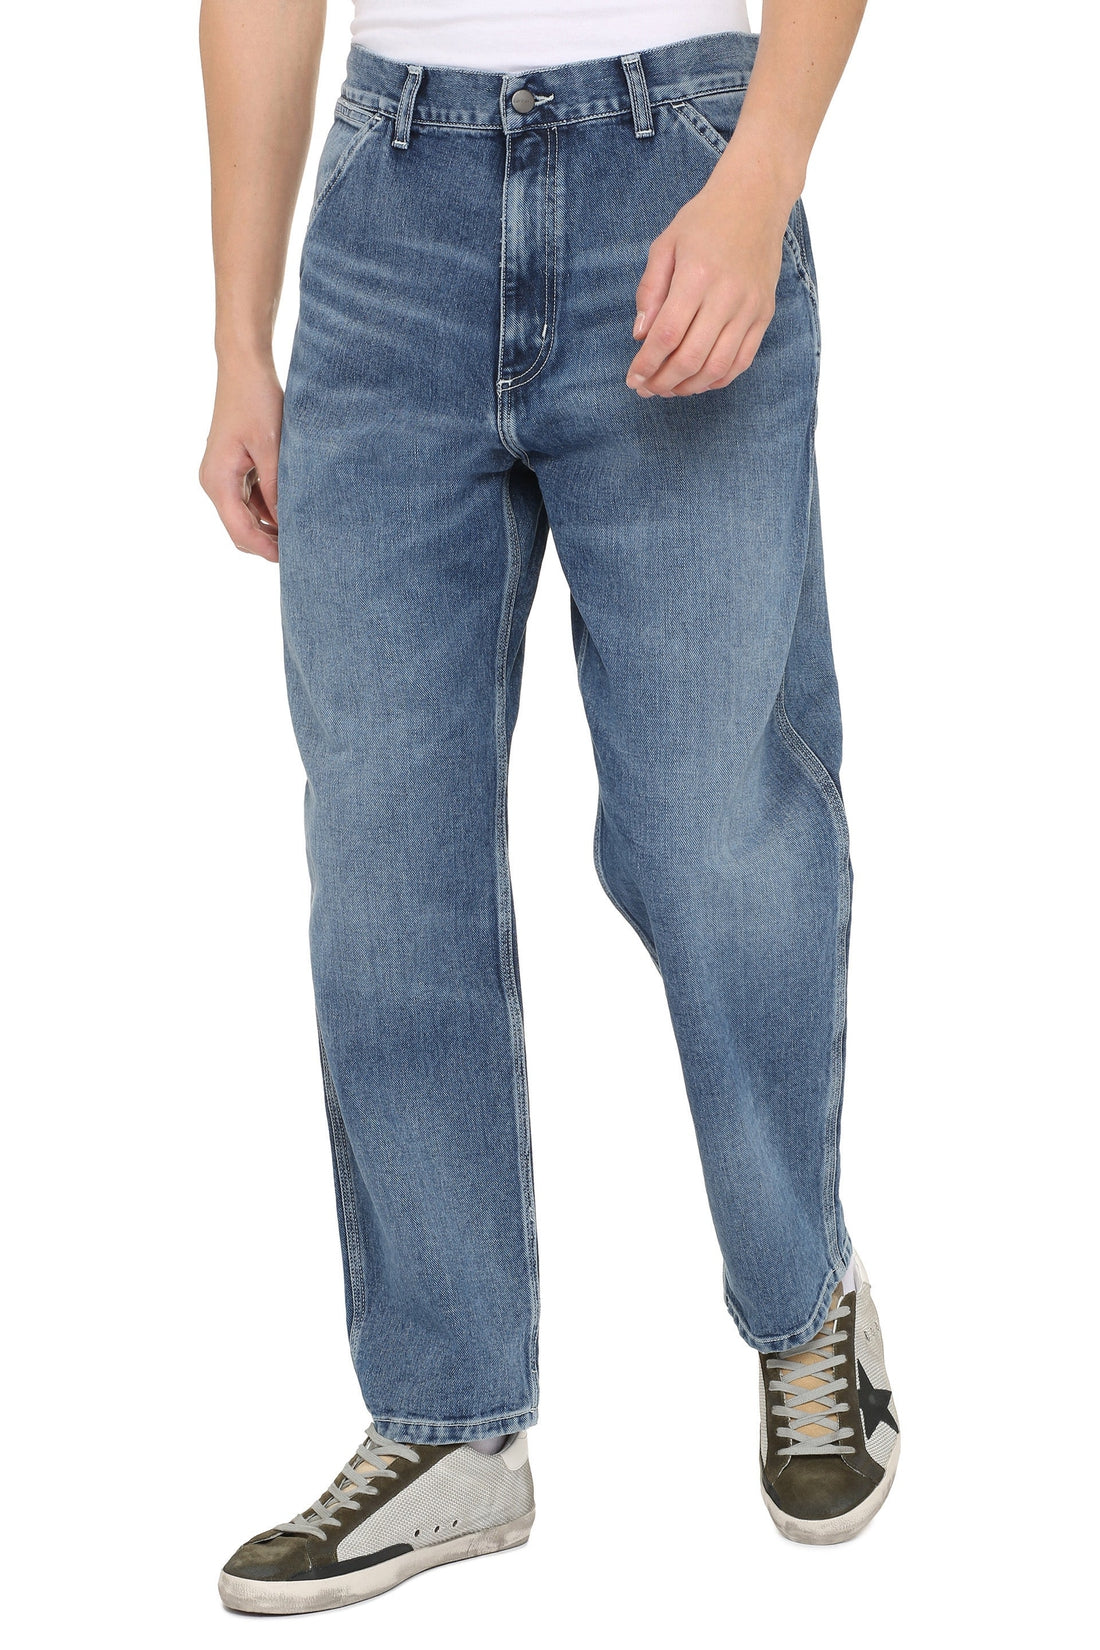 Carhartt-OUTLET-SALE-Penrod 5-pocket regular fit jeans-ARCHIVIST